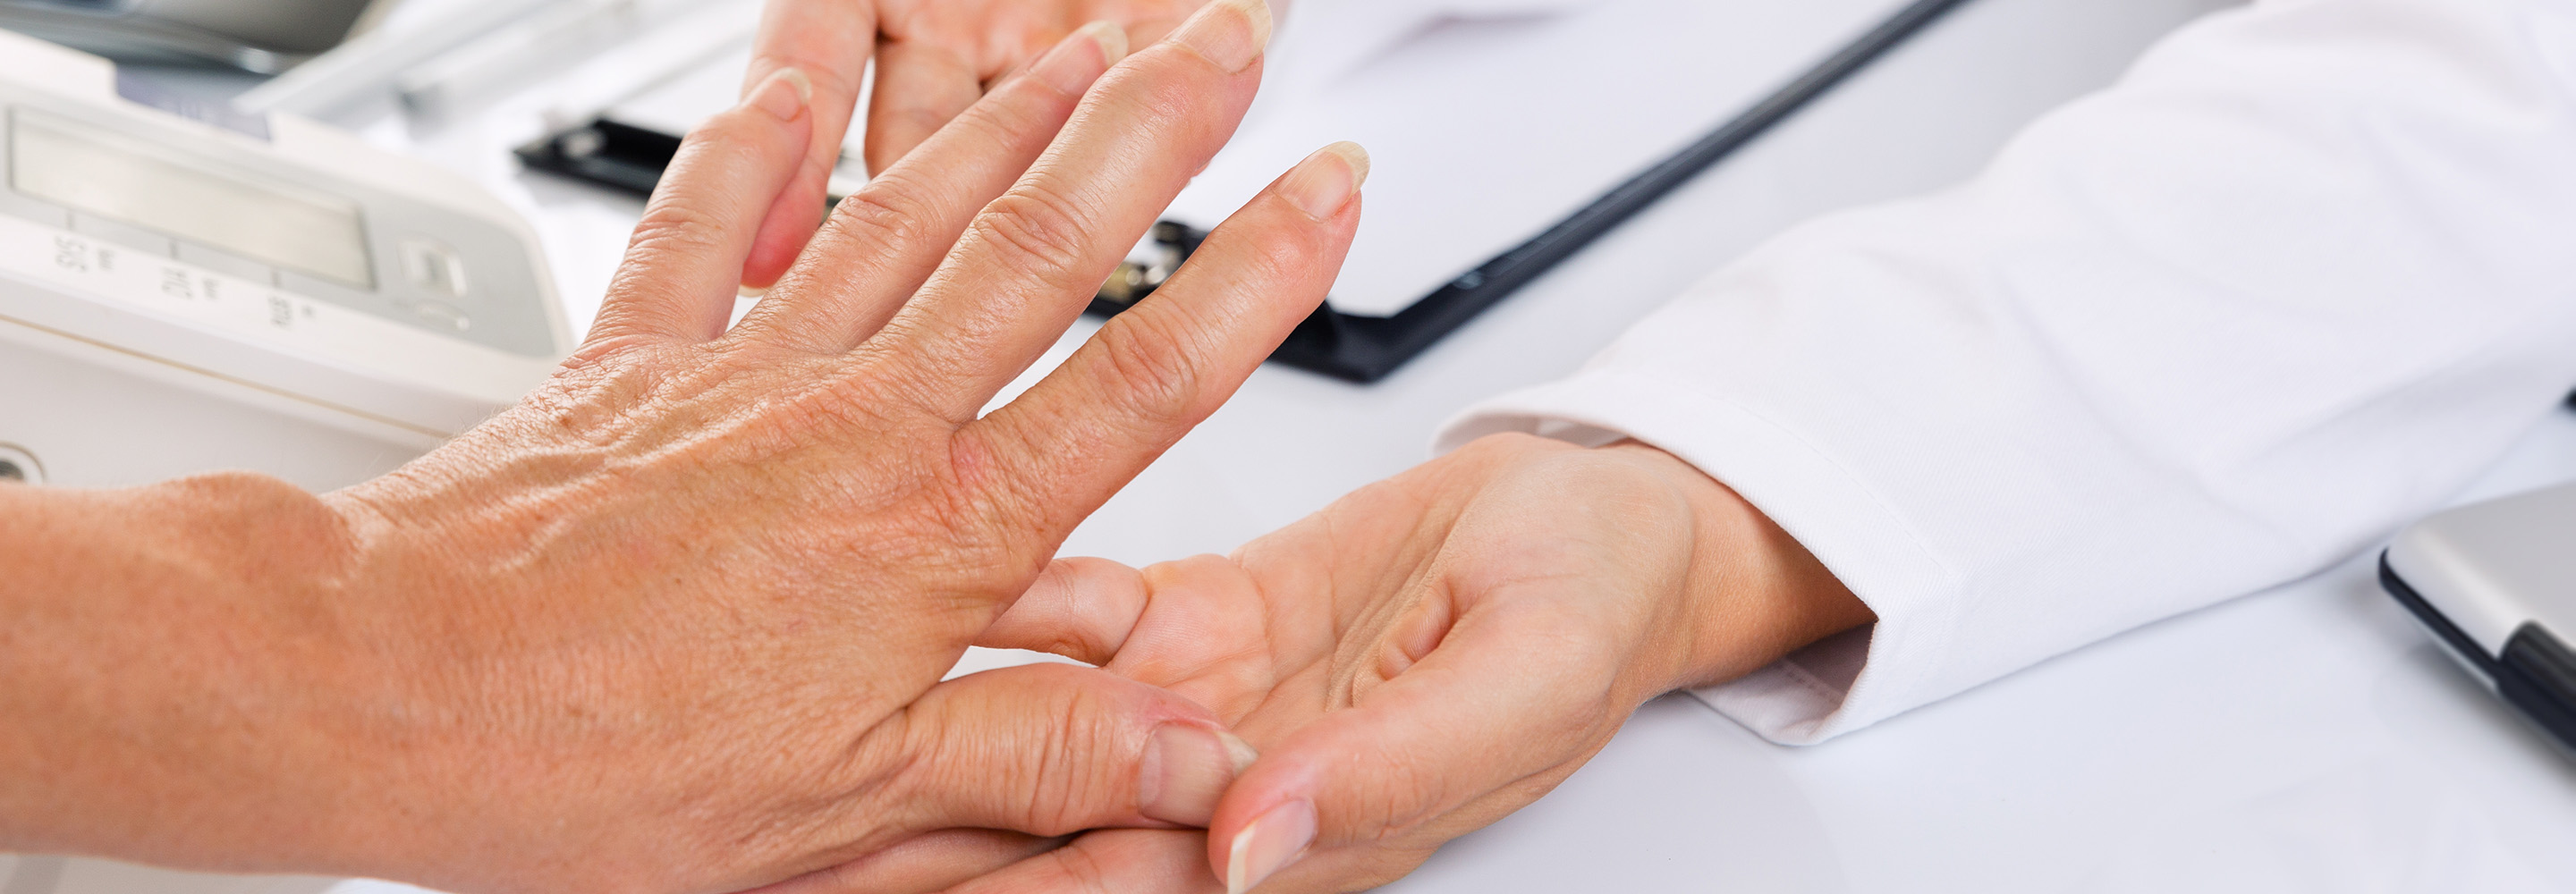 Artrózis és reumatoid artritisz hogyan különböztethető meg? | Harmónia Centrum Blog